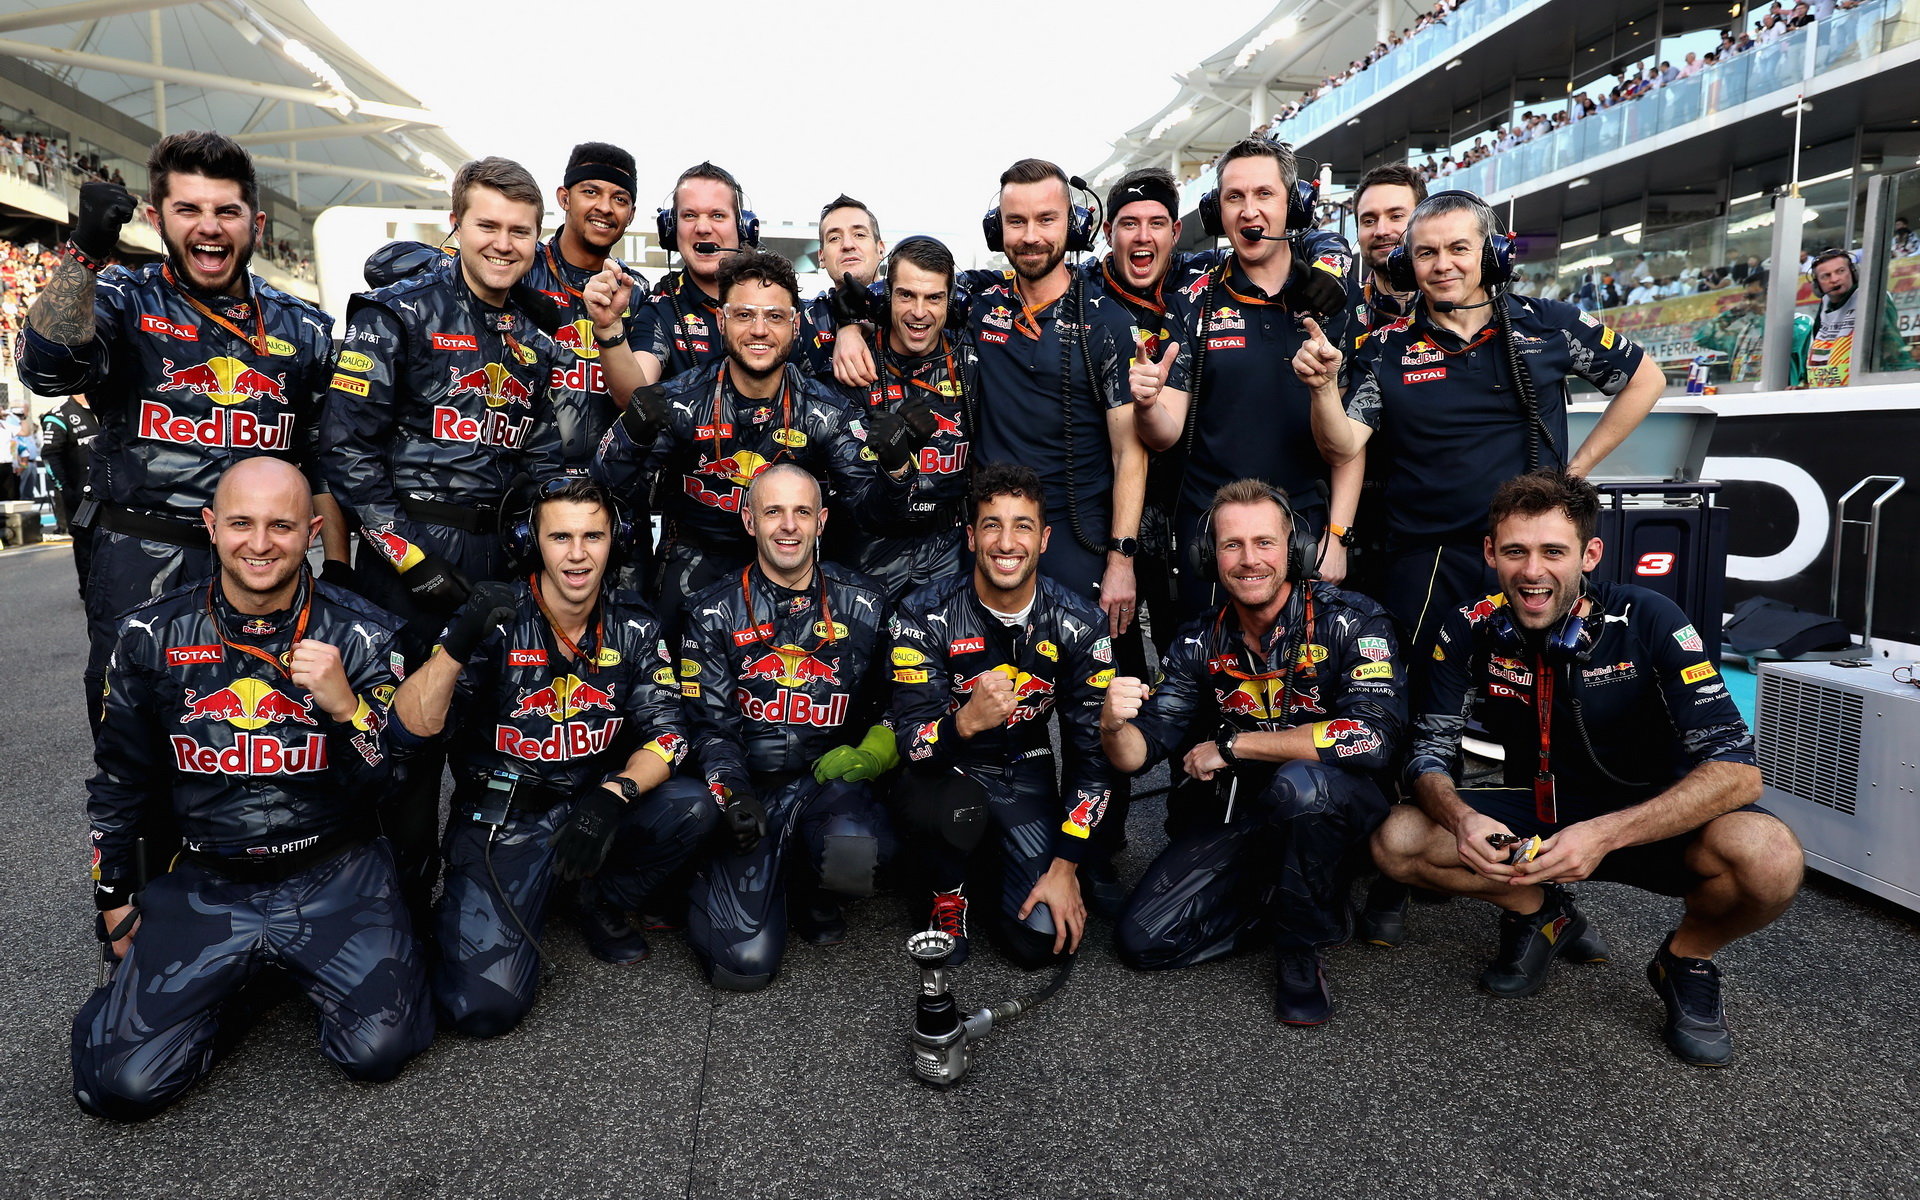 V týmu Red Bull se očekává mnohem dramatičtější závodní projev